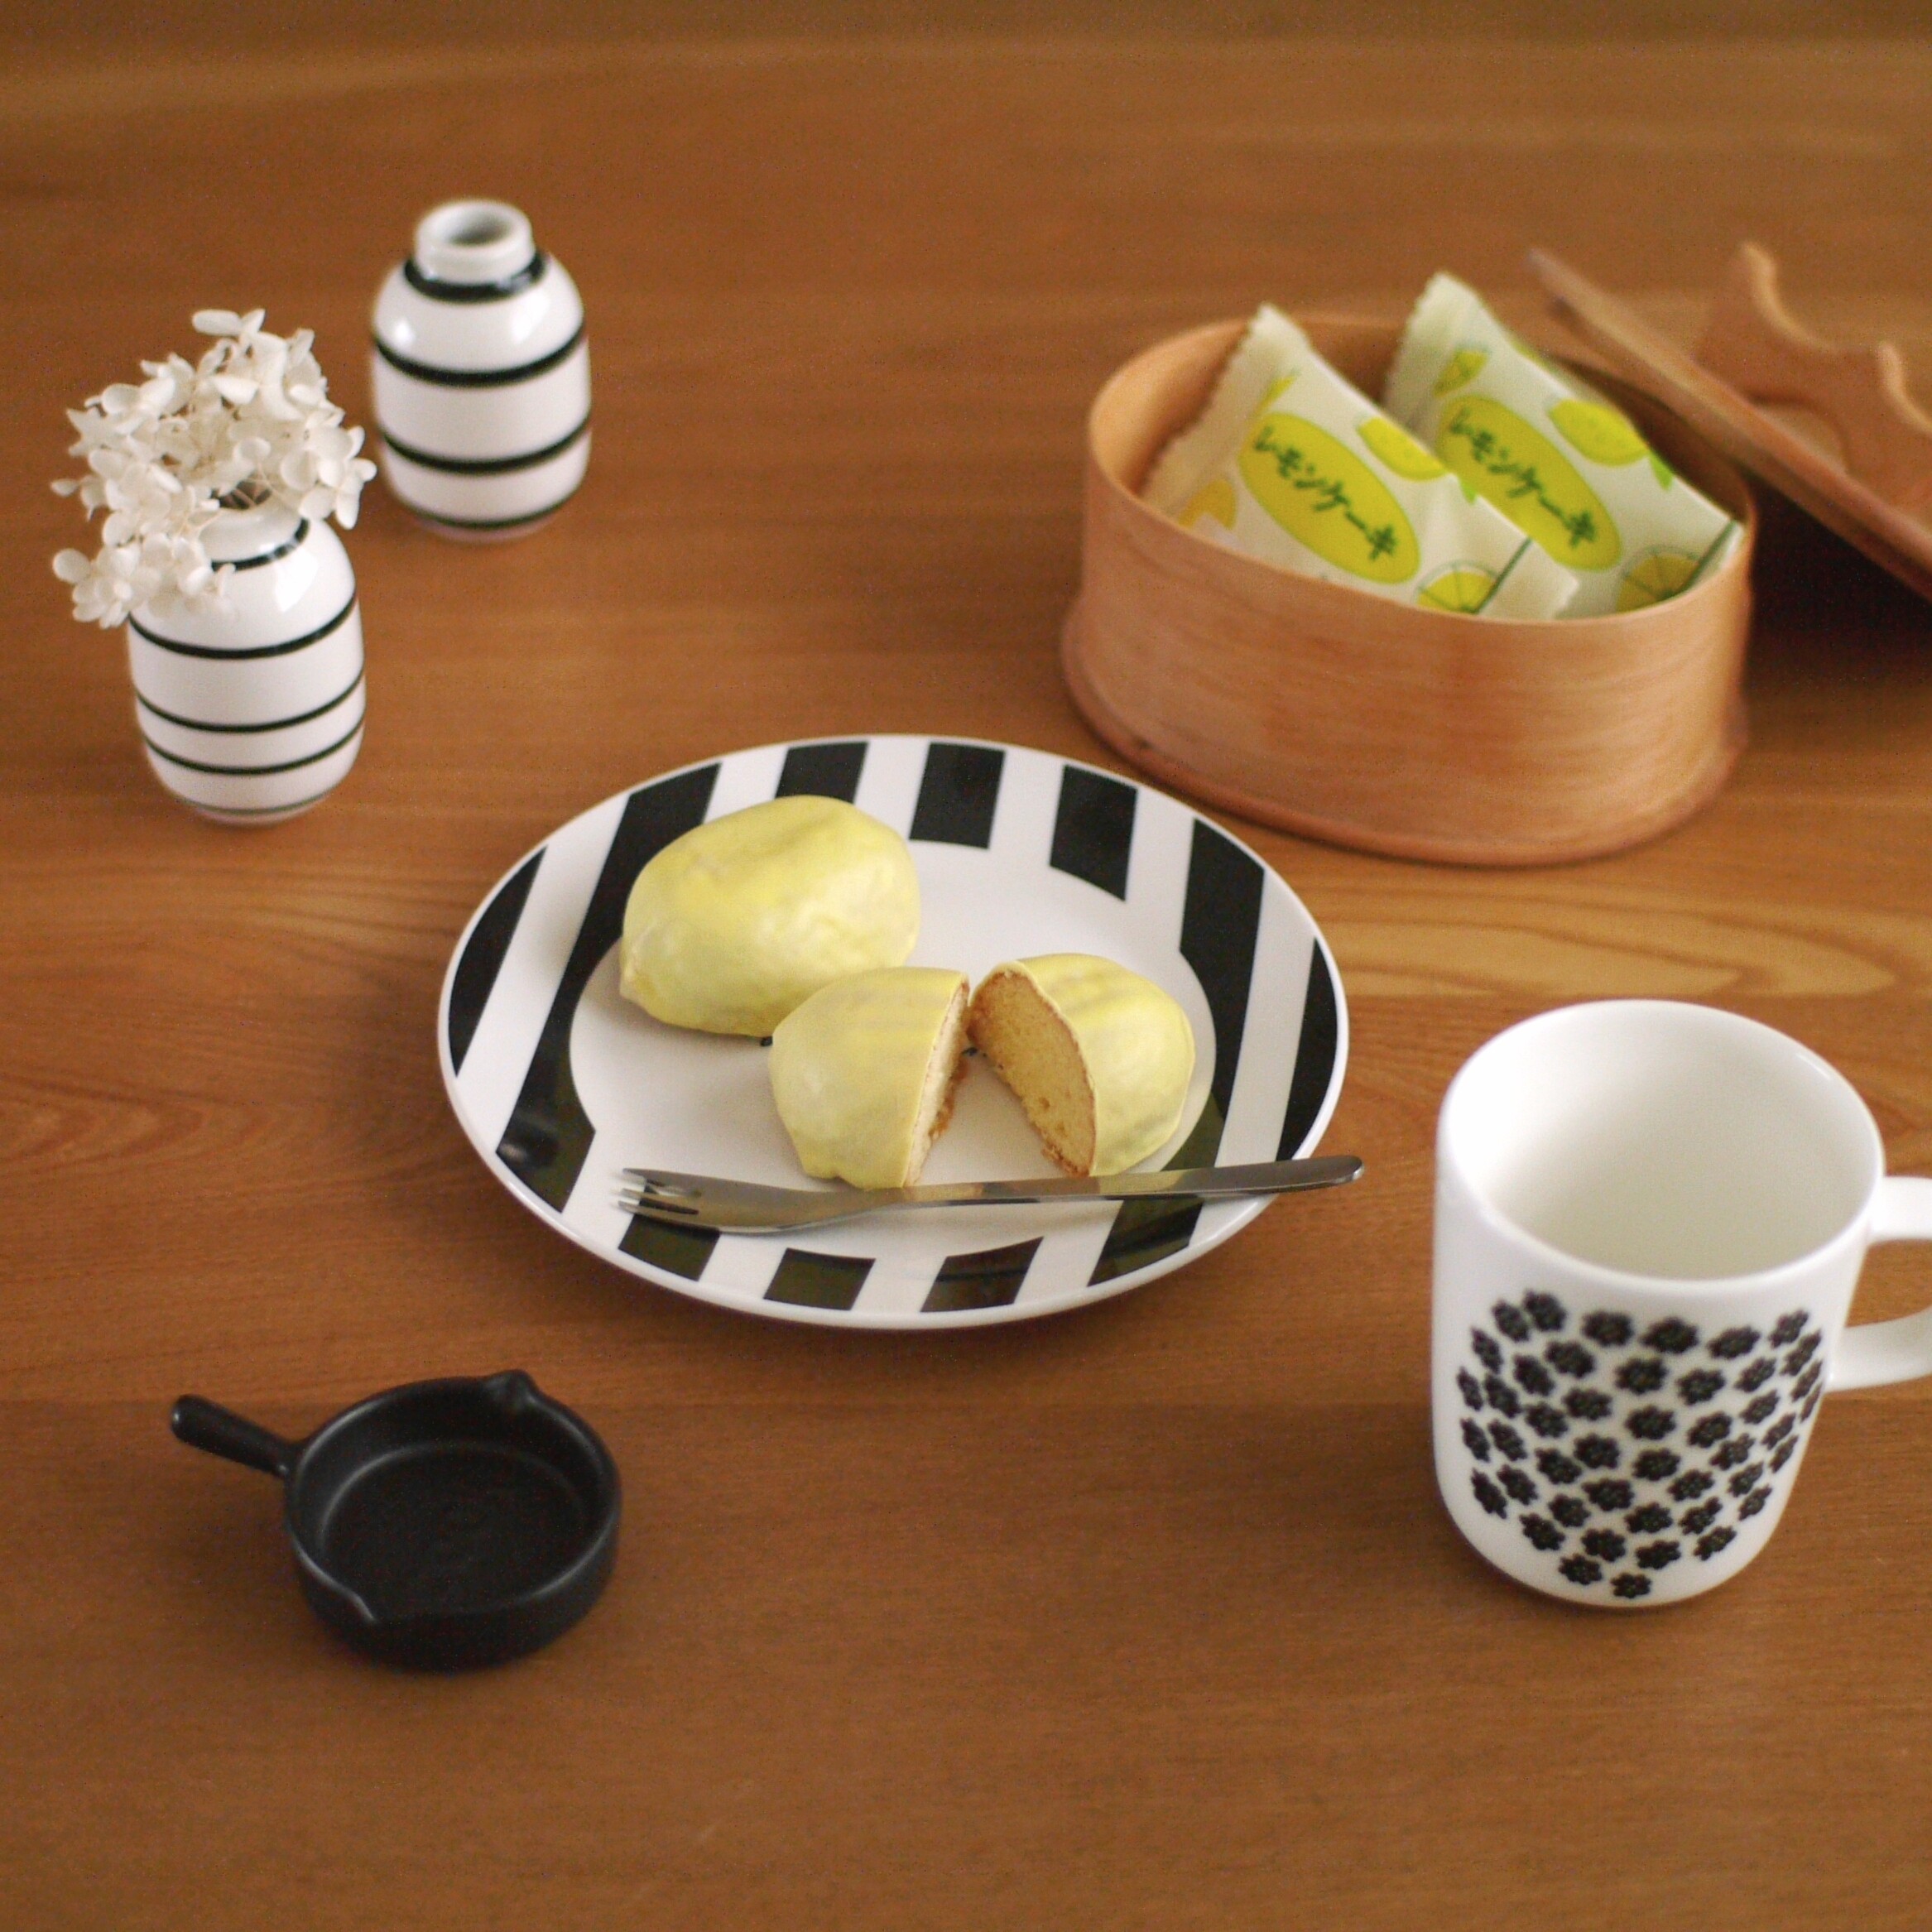 ダイソー 新商品の美味しいスイーツ レモンケーキ2個で100円はすごい Usagi Works Powered By ライブドアブログ